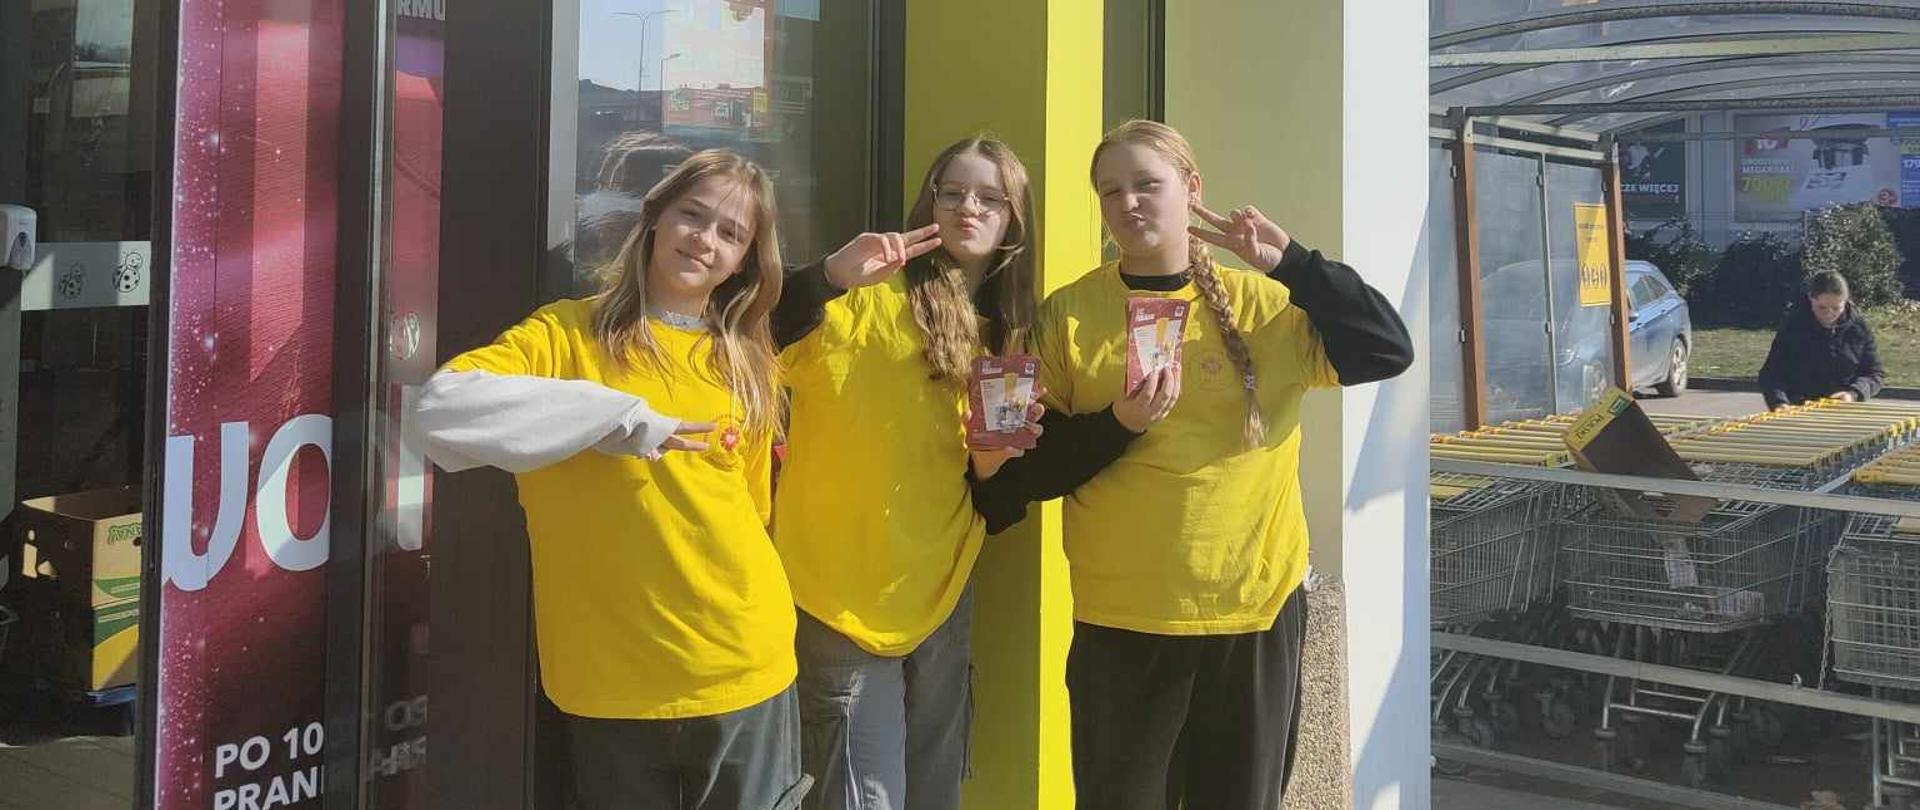 Trzy dziewczyny stojące pod drzwiami do marketu, mają żółte koszulki, trzymają ulotki, podnoszą palce do góry układając je w kształt v.